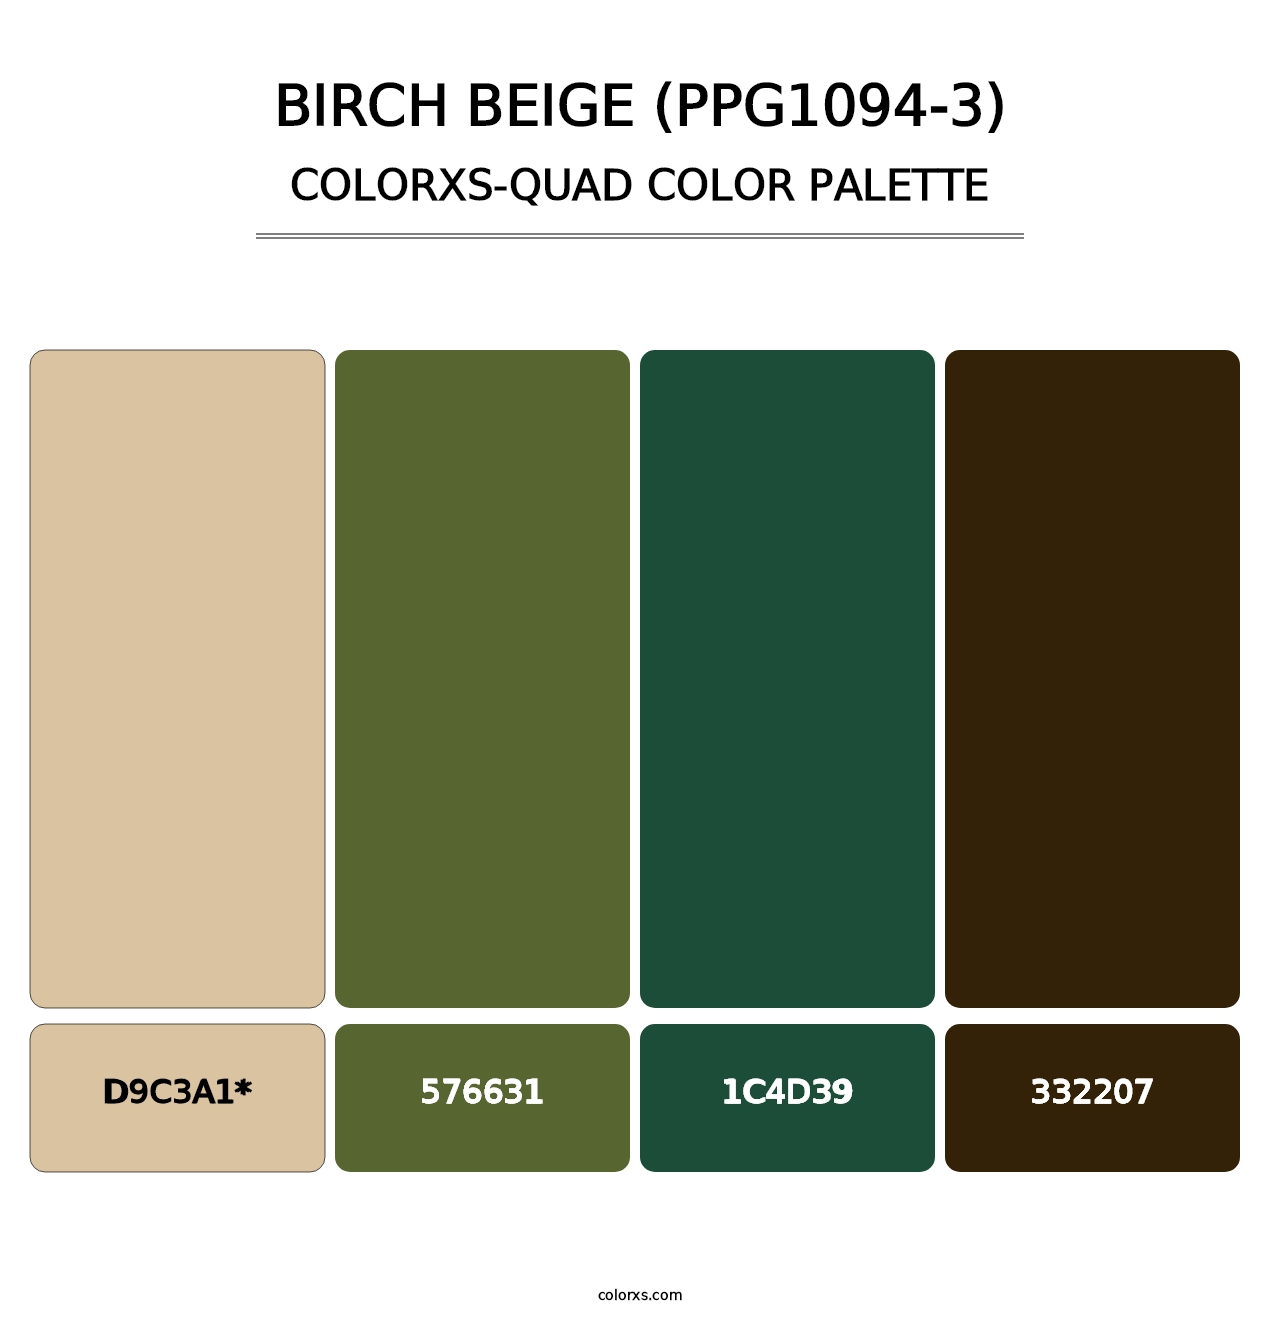 Birch Beige (PPG1094-3) - Colorxs Quad Palette